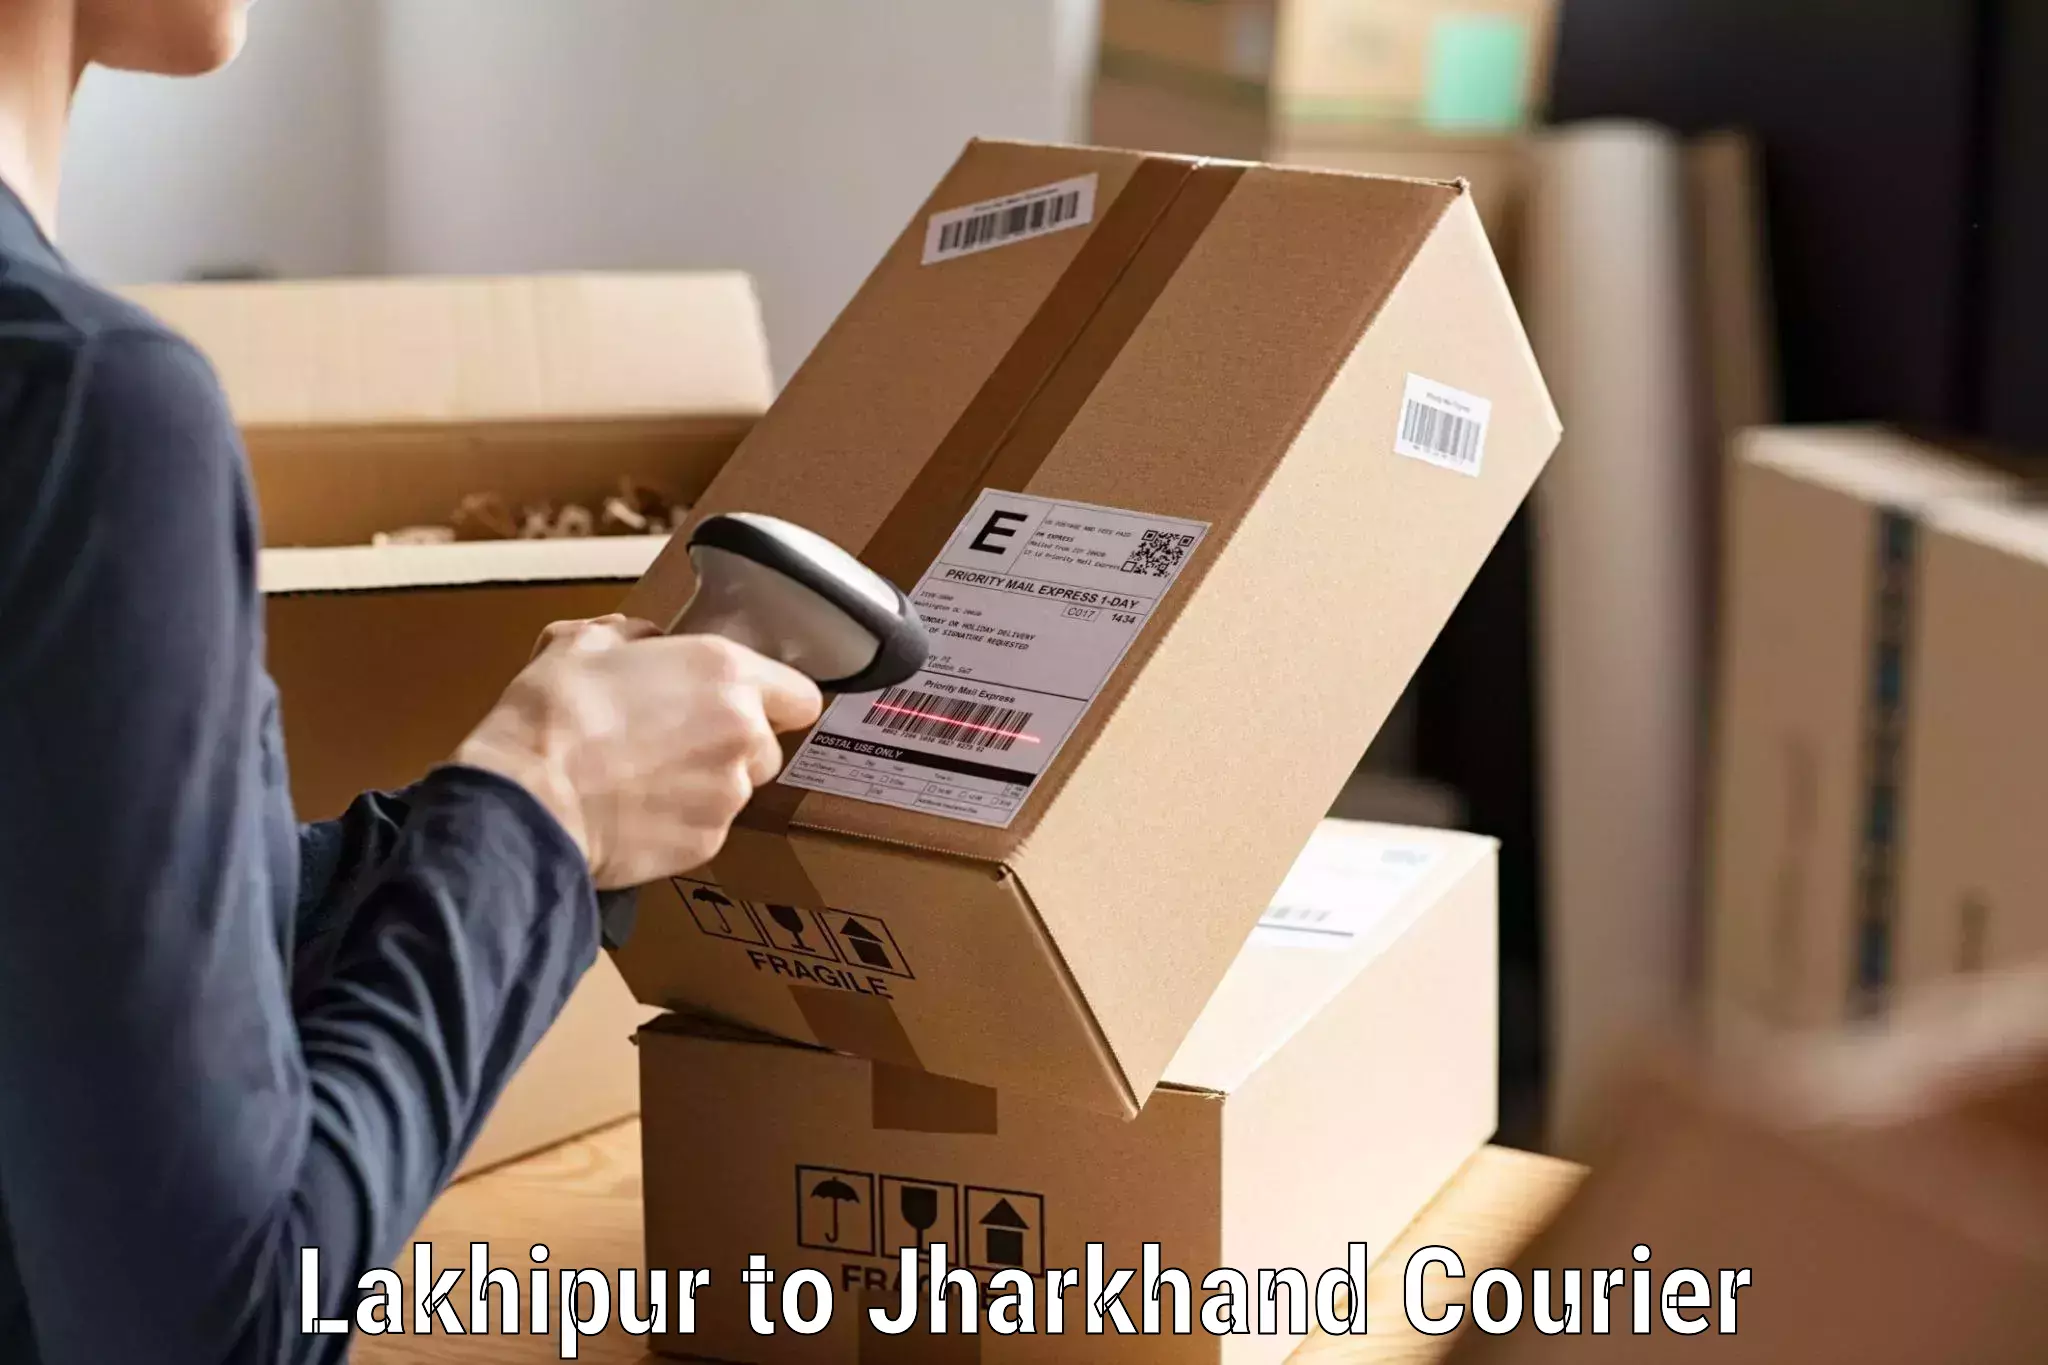 Enhanced tracking features Lakhipur to Simdega